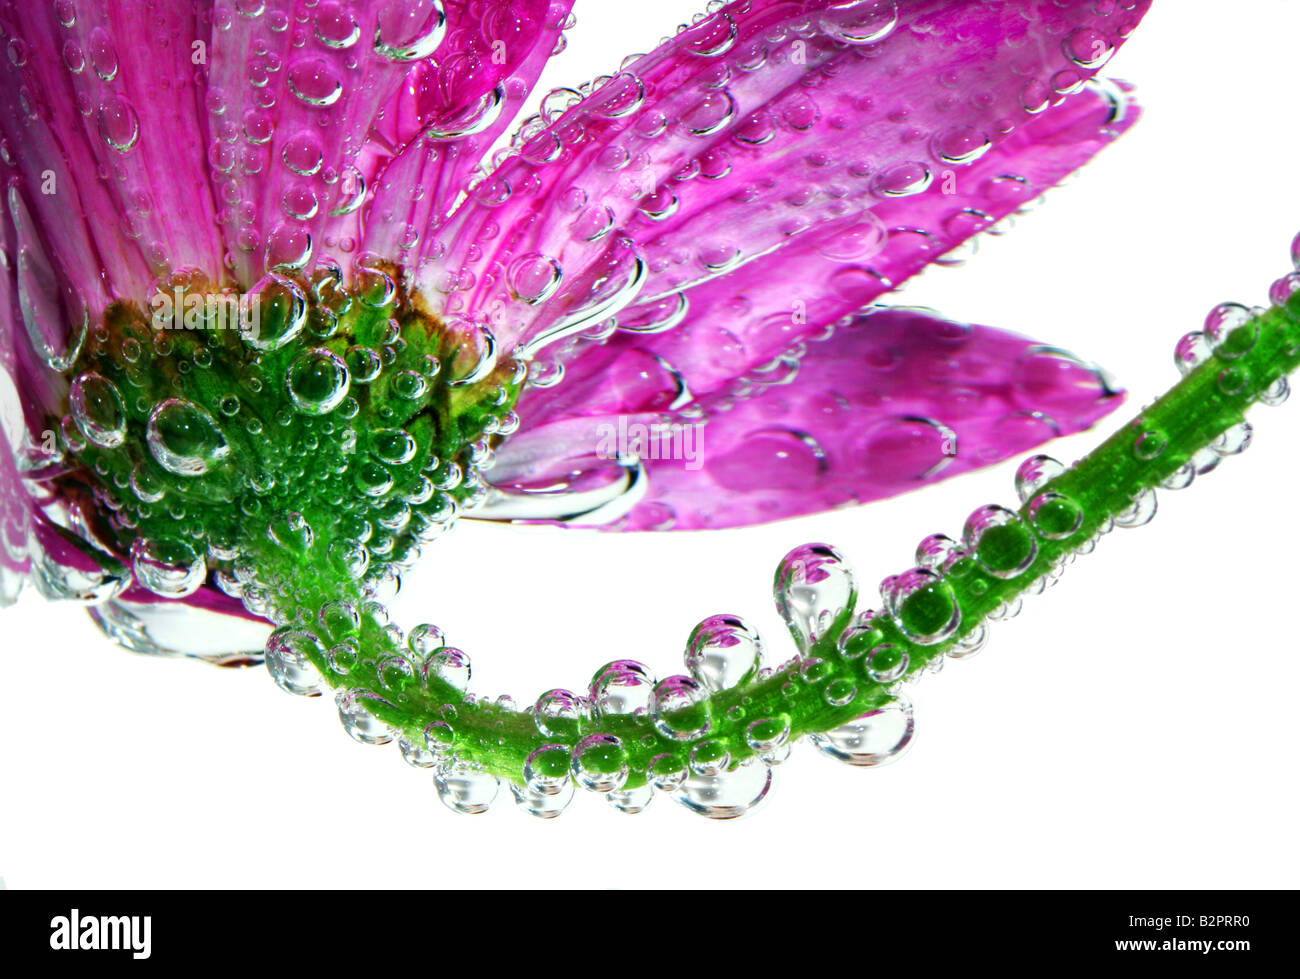 Fotos de pink gerbera daisy cubierto con bellas gotas reflectante o burbujas Foto de stock